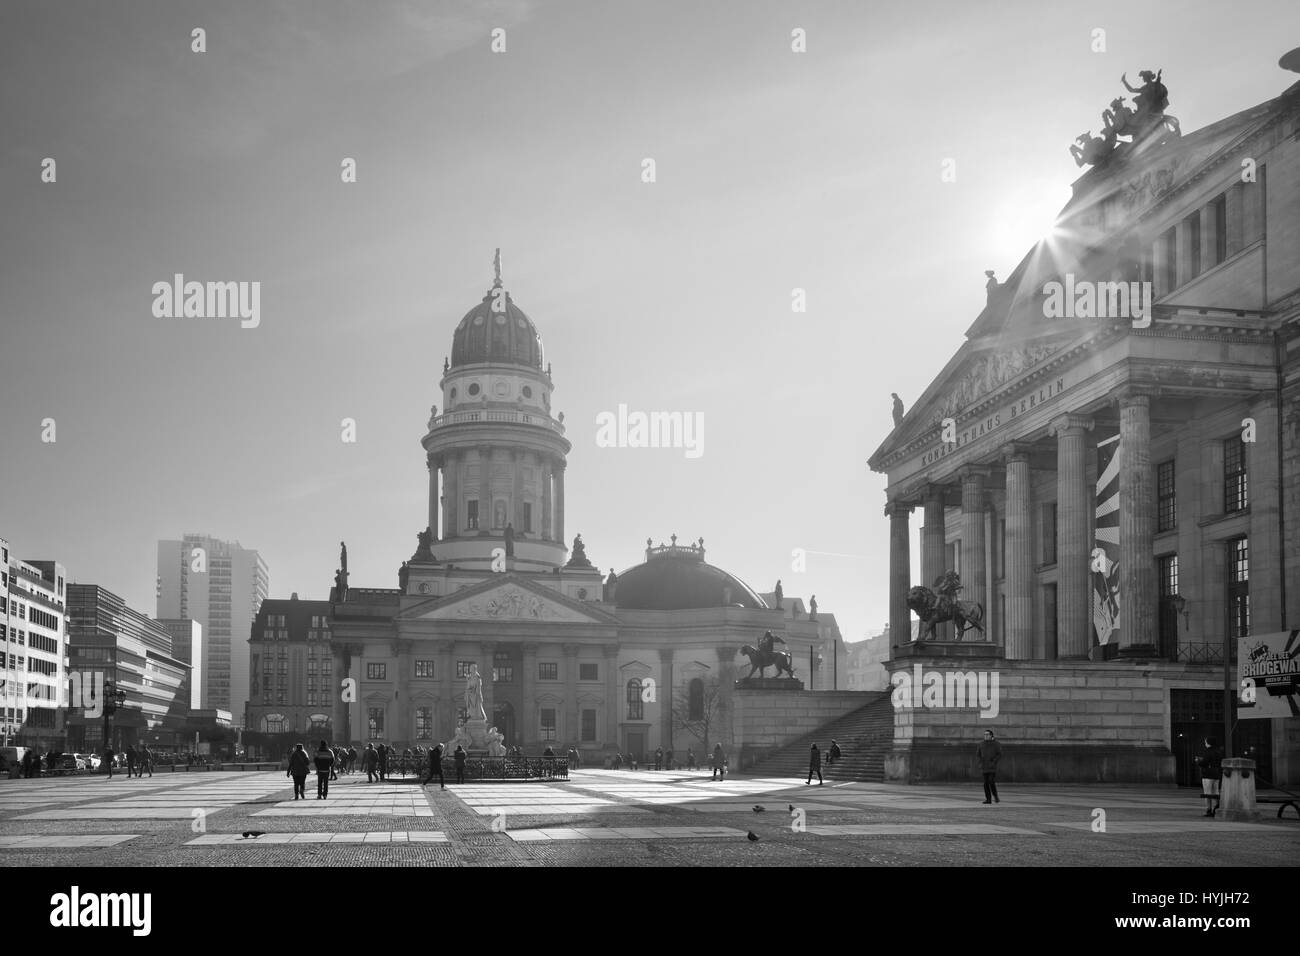 BERLIN, Deutschland, Februar - 13, 2017: Die Kirche Deutscher Dom und das Denkmal von Friedrich Schiller auf dem Gendarmenmarkt-Platz. Stockfoto